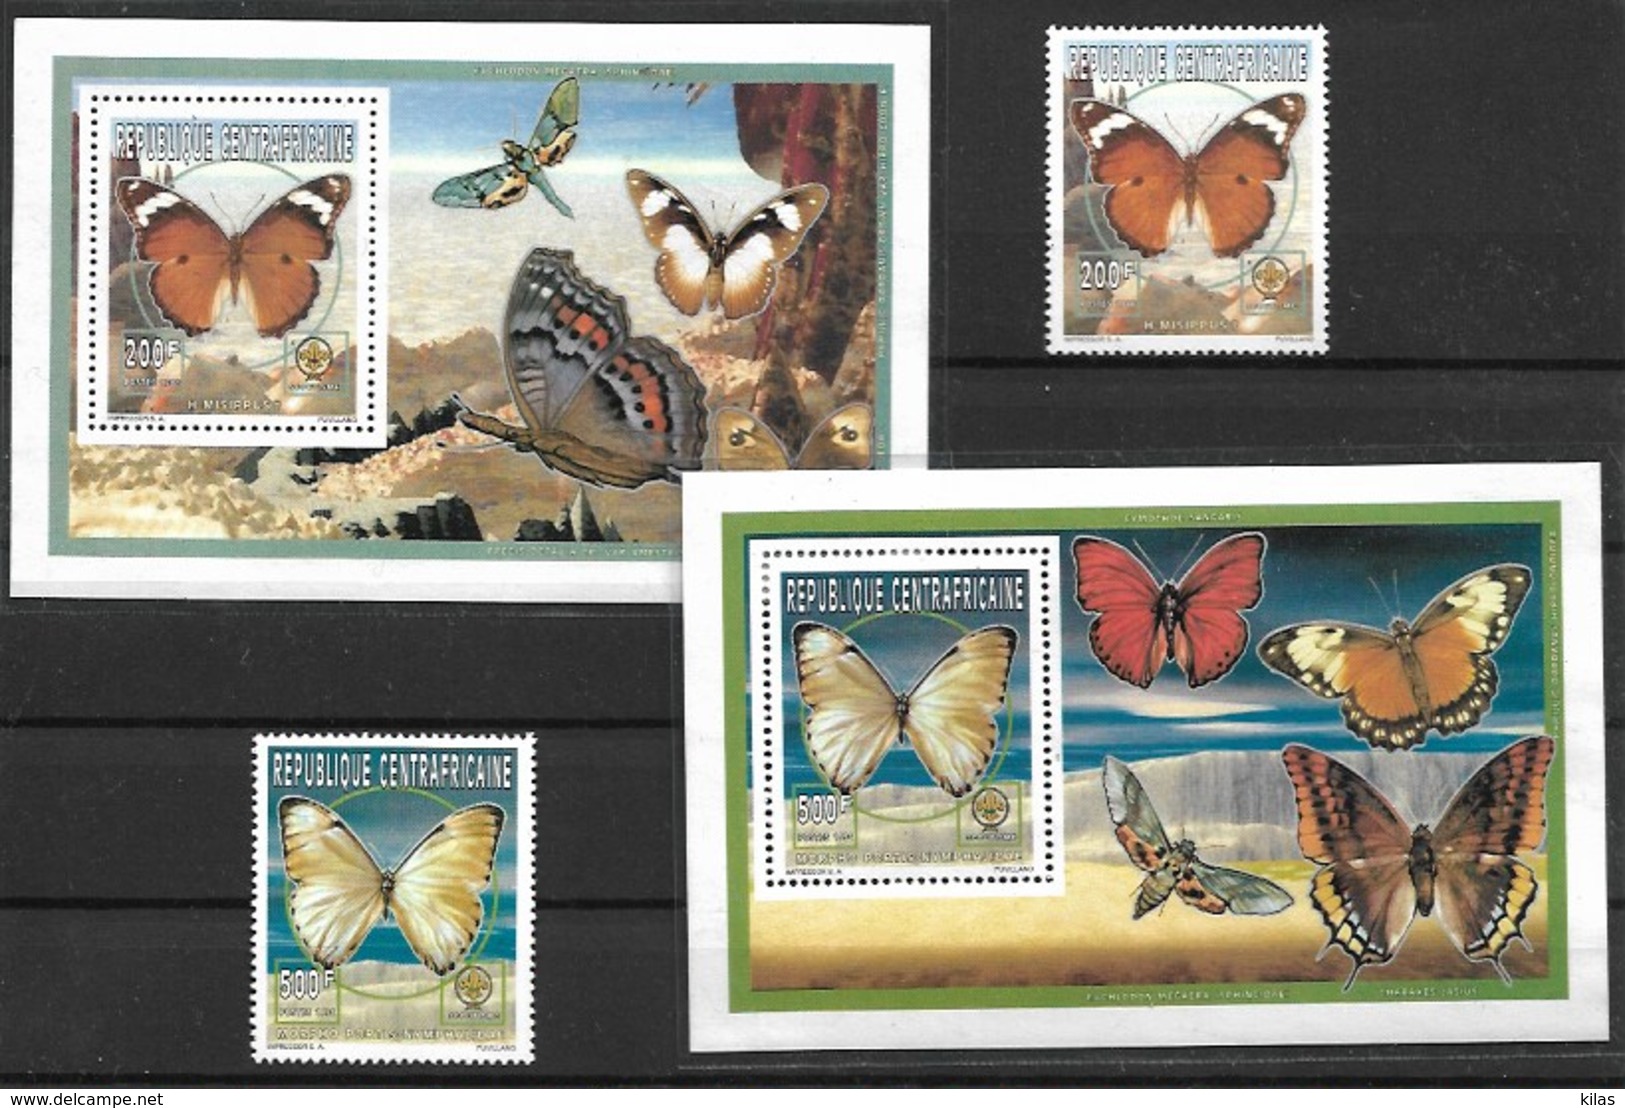 CENTRAFRICAINE 1996 Butterflies, MNH - Farfalle